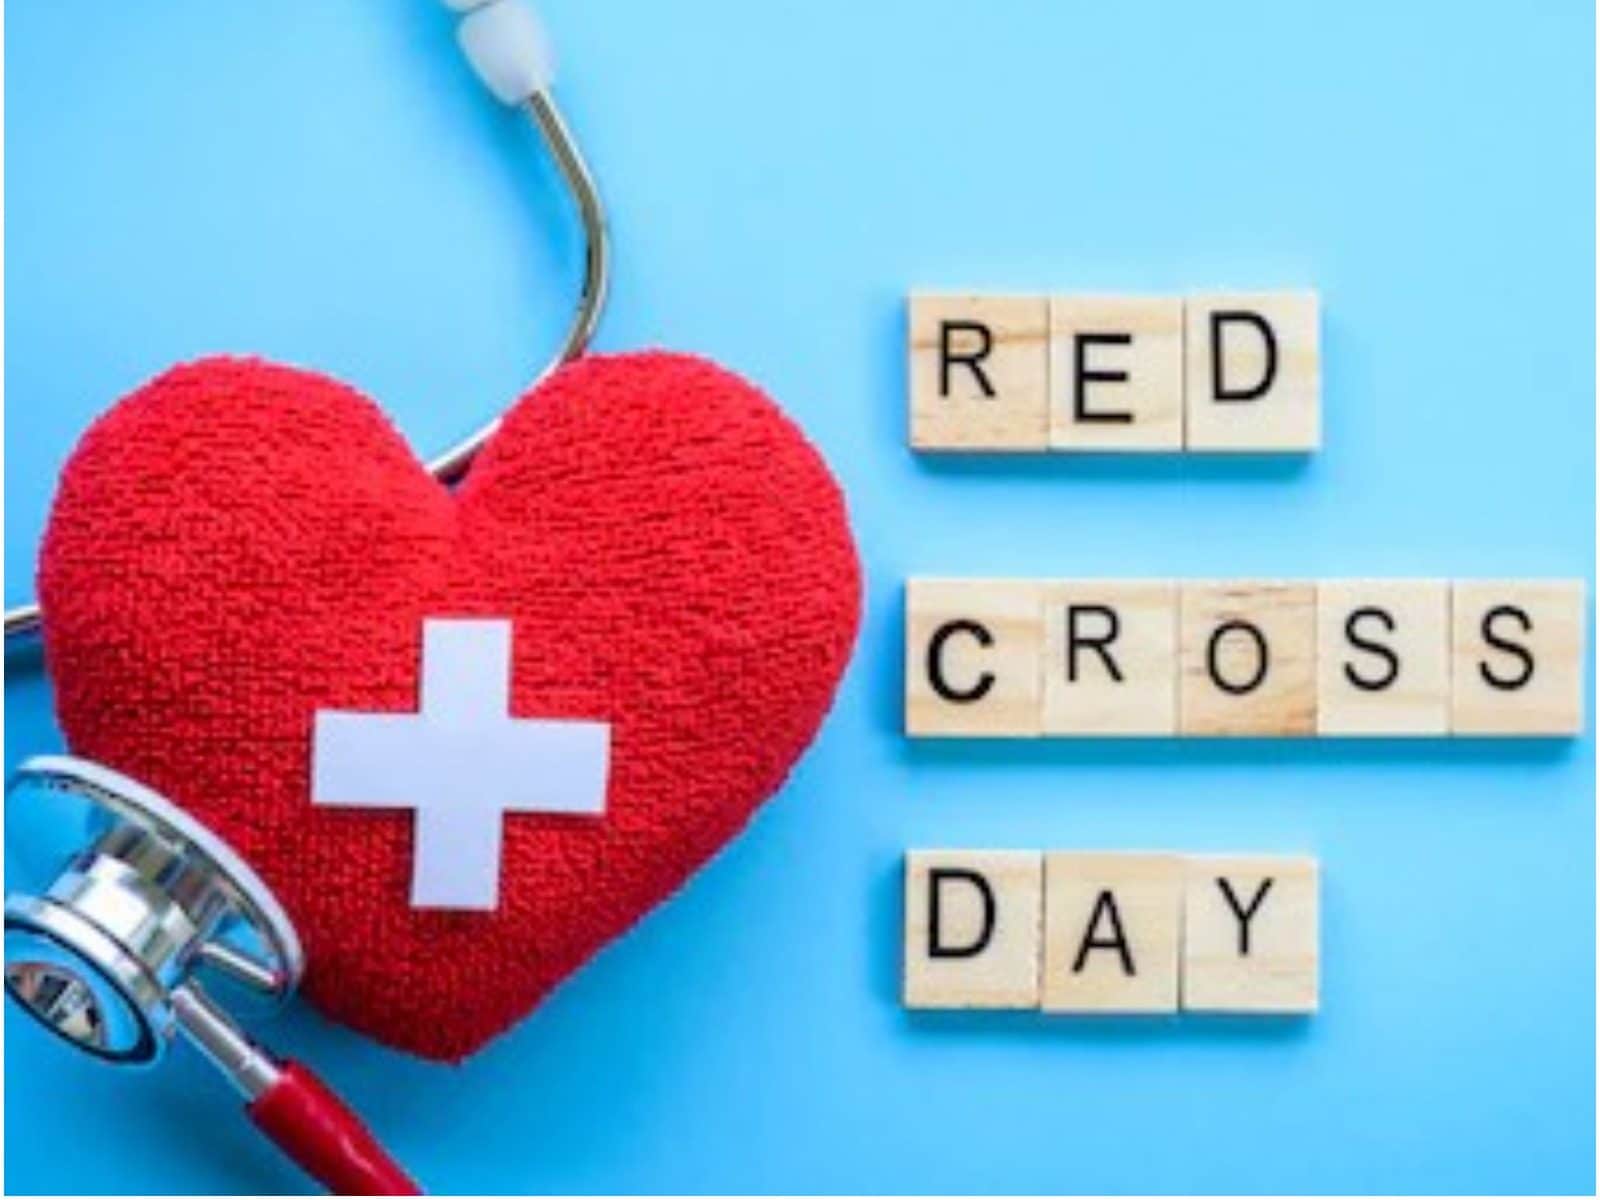 Ngày Chữ thập đỏ Thế giới 2022 là một sự kiện đặc biệt để tôn vinh các hoạt động từ thiện của Hội Chữ thập đỏ trên toàn thế giới. Xem hình ảnh liên quan để tham gia vào các hoạt động và cùng chia sẻ tình người đến những người cần thiết.